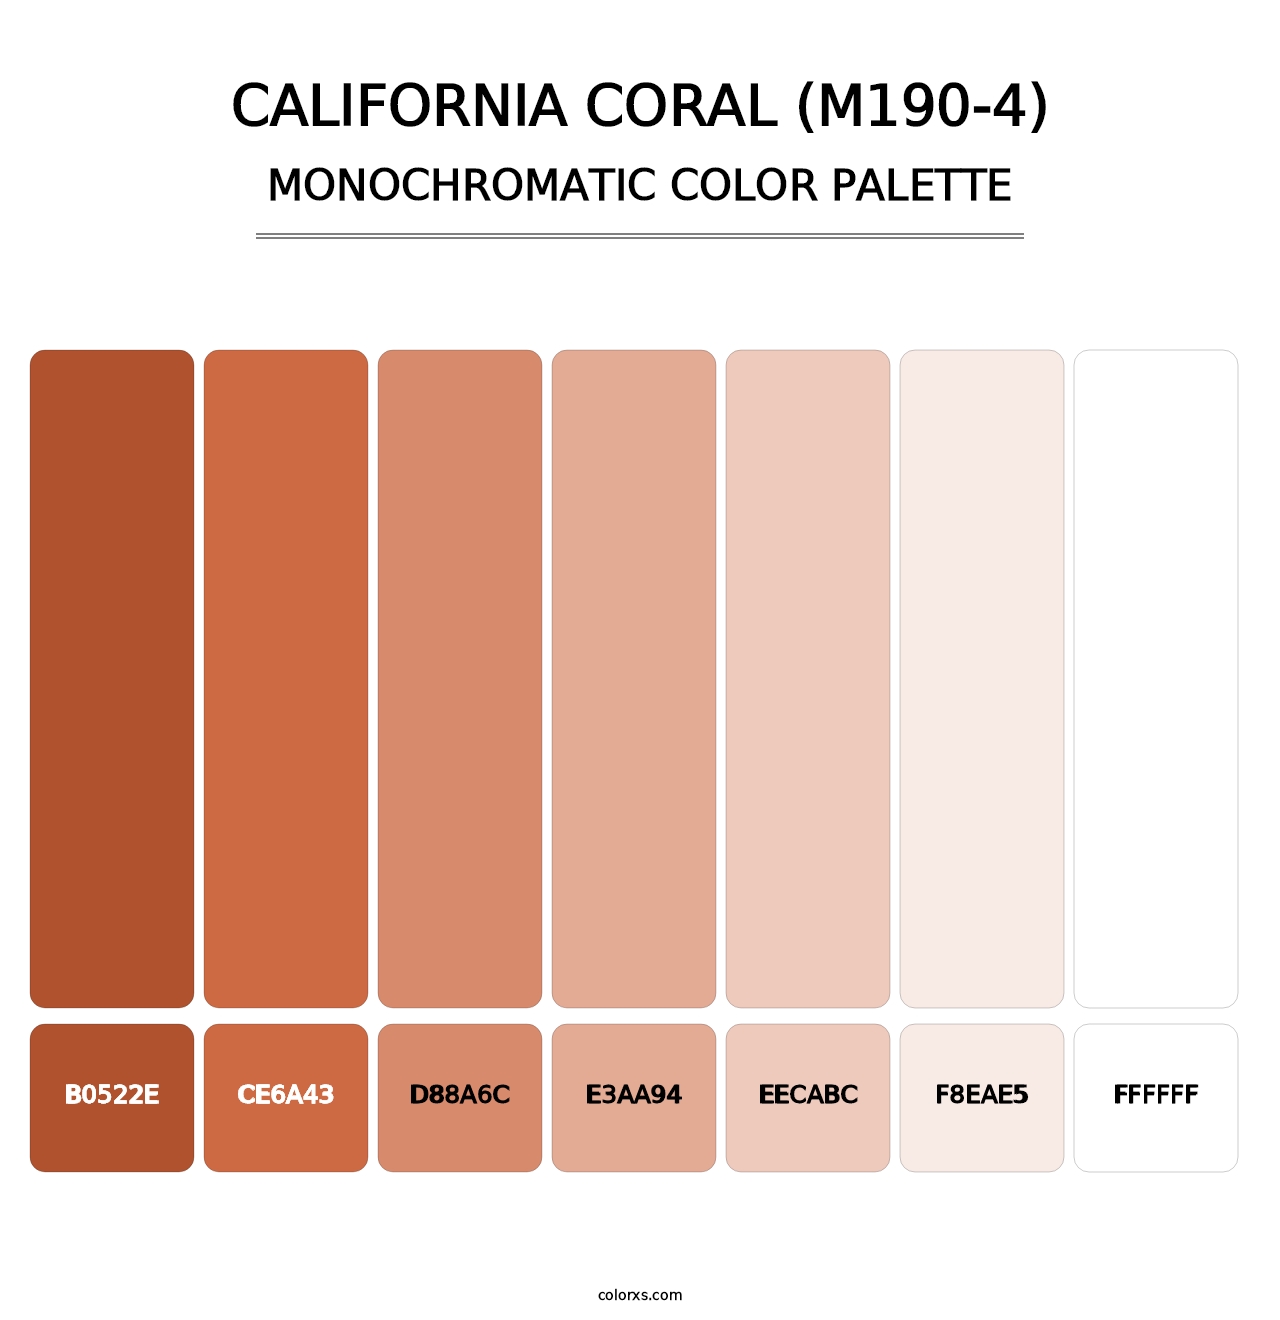 California Coral (M190-4) - Monochromatic Color Palette